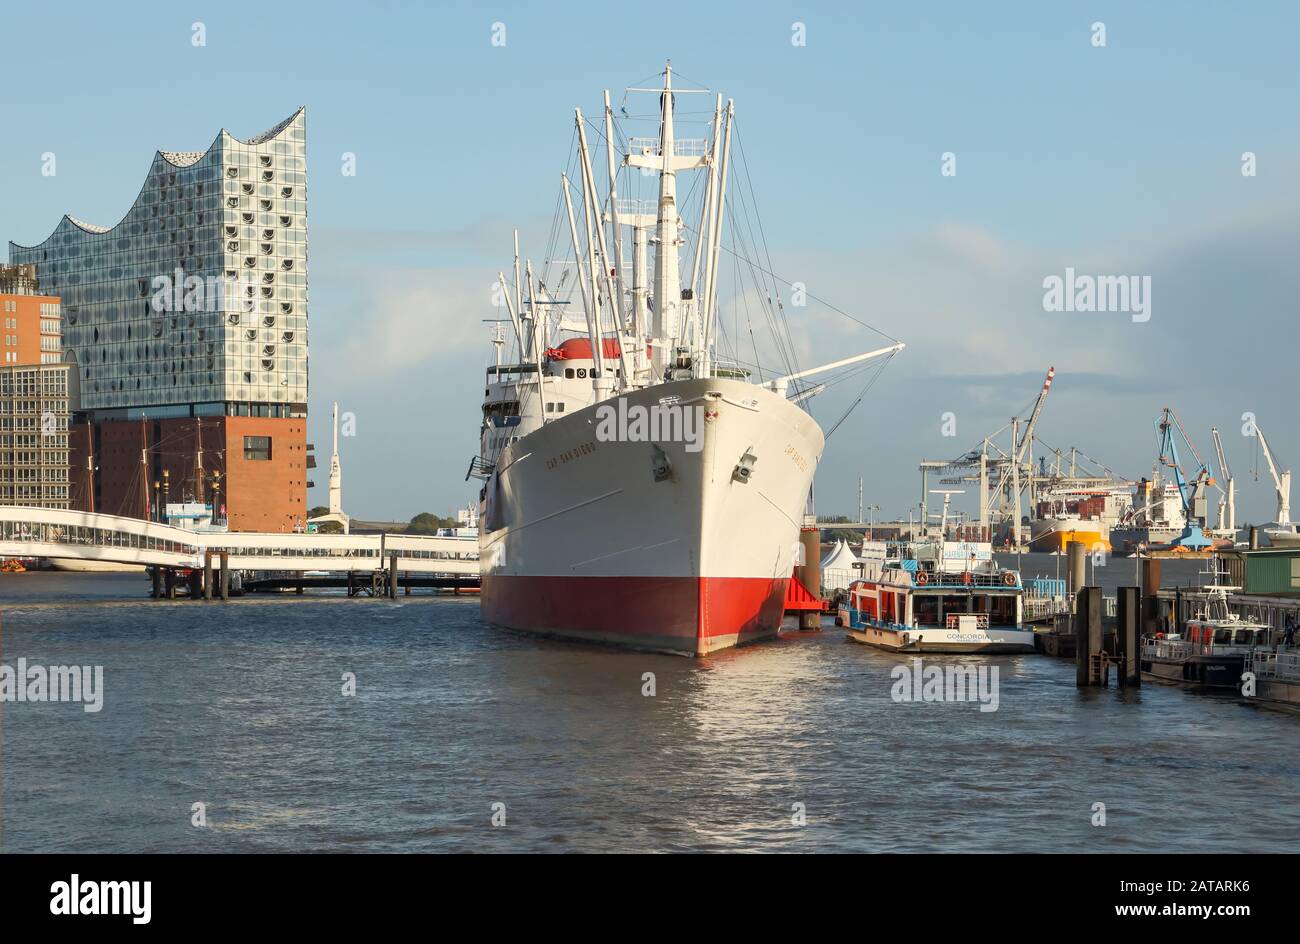 Il Cap San Diego è una nave museo con un ormeggio al Überseebrücke nel porto di Amburgo. Foto Stock